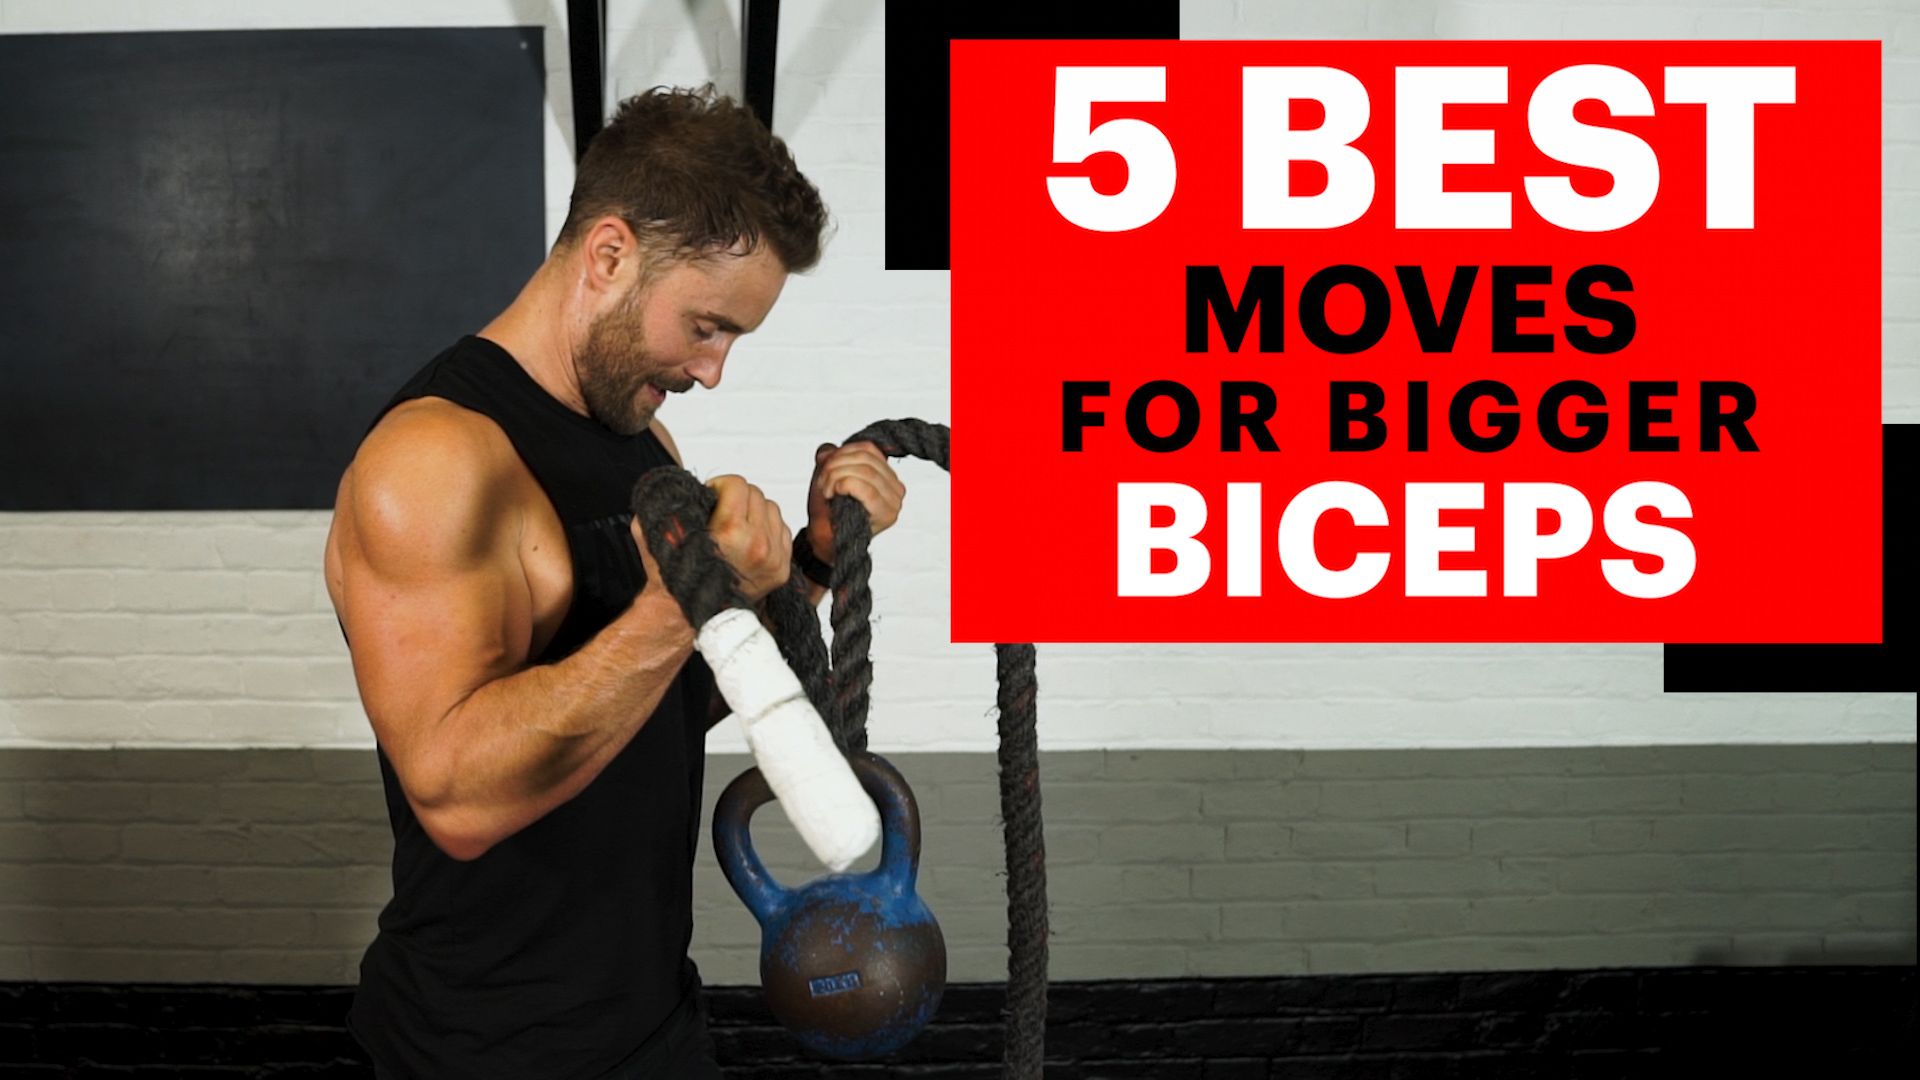 11 Best Bi workout ideas  biceps workout, big biceps workout, gym